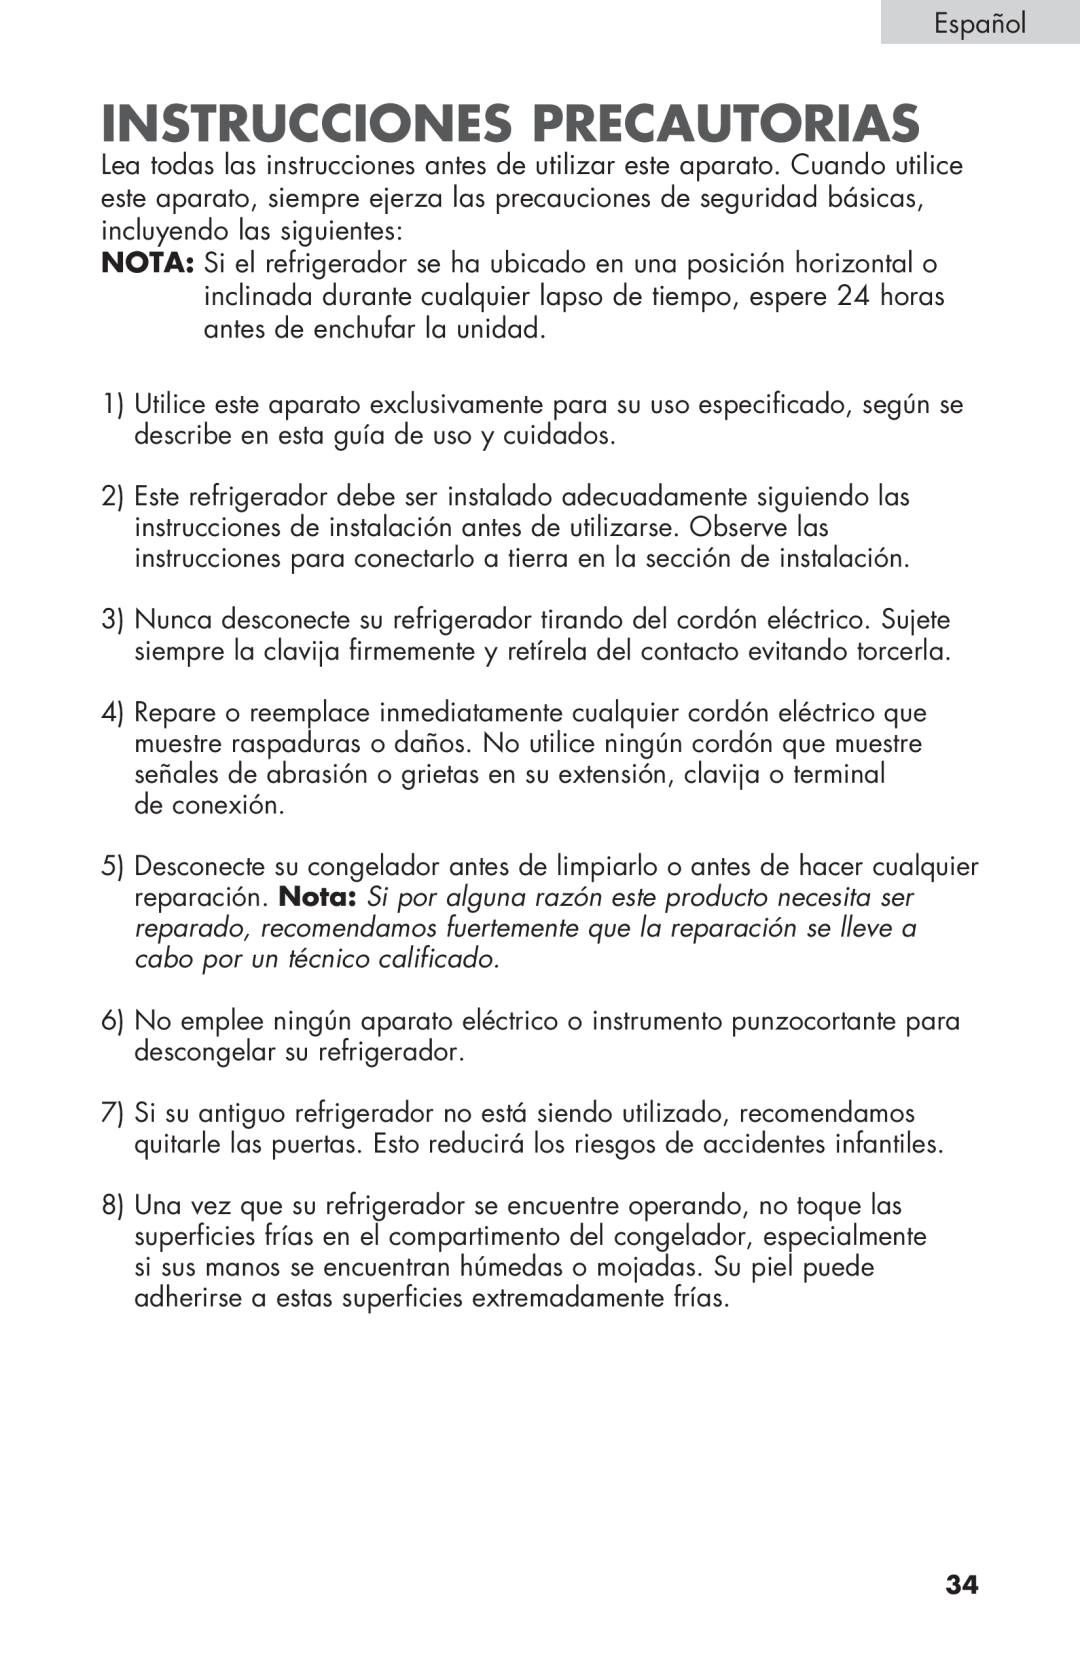 Haier HNSE032, COMPACT REFRIGERATOR manual Instrucciones Precautorias 